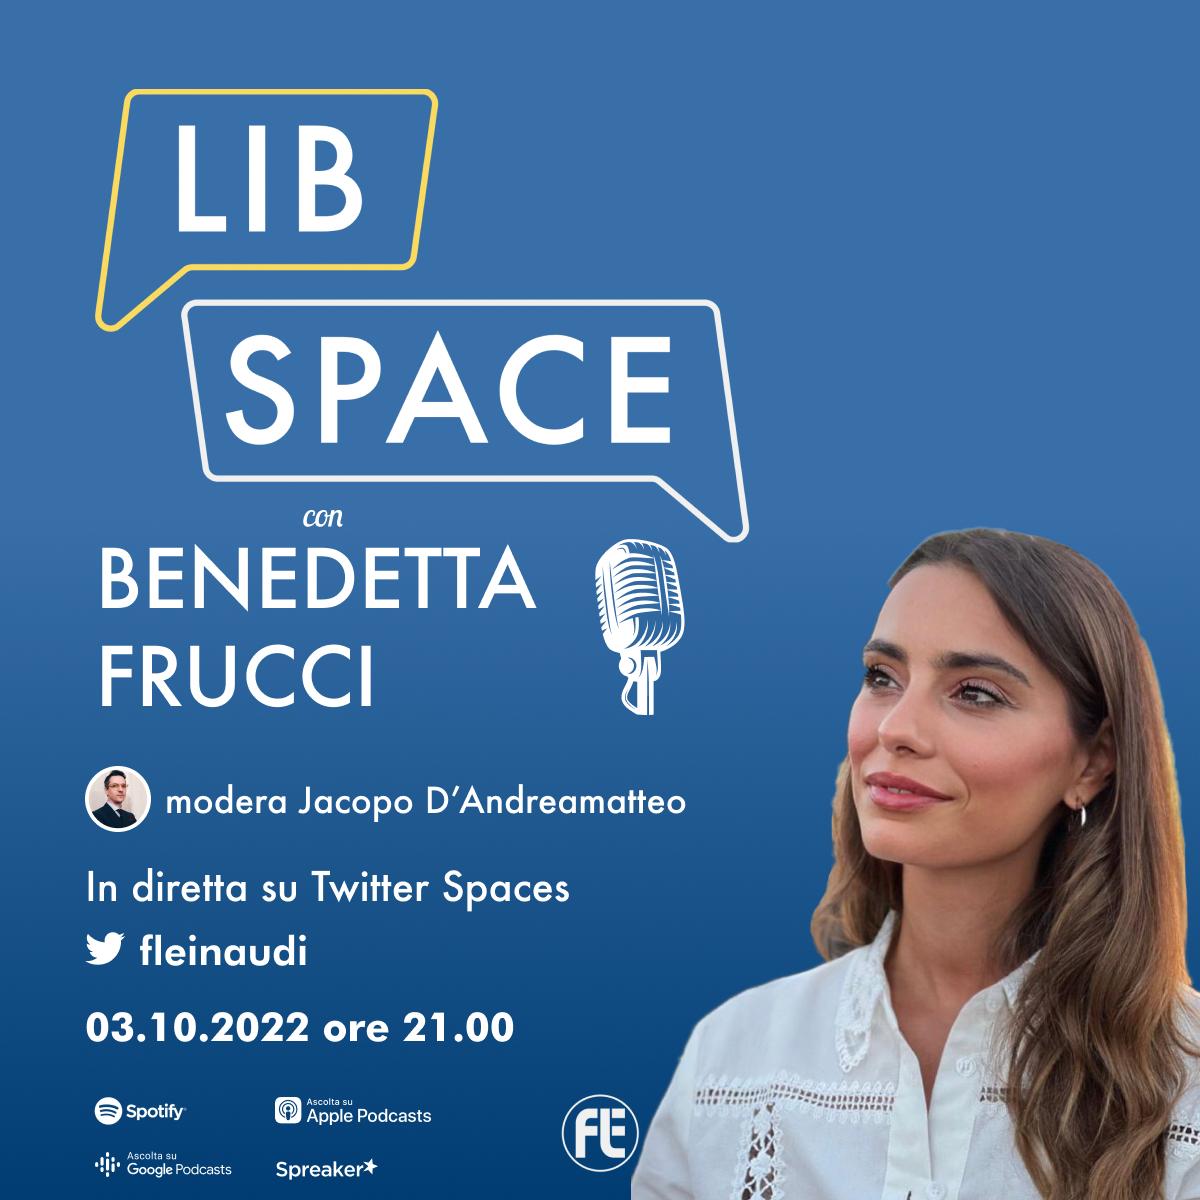 LibSpace con Benedetta Frucci